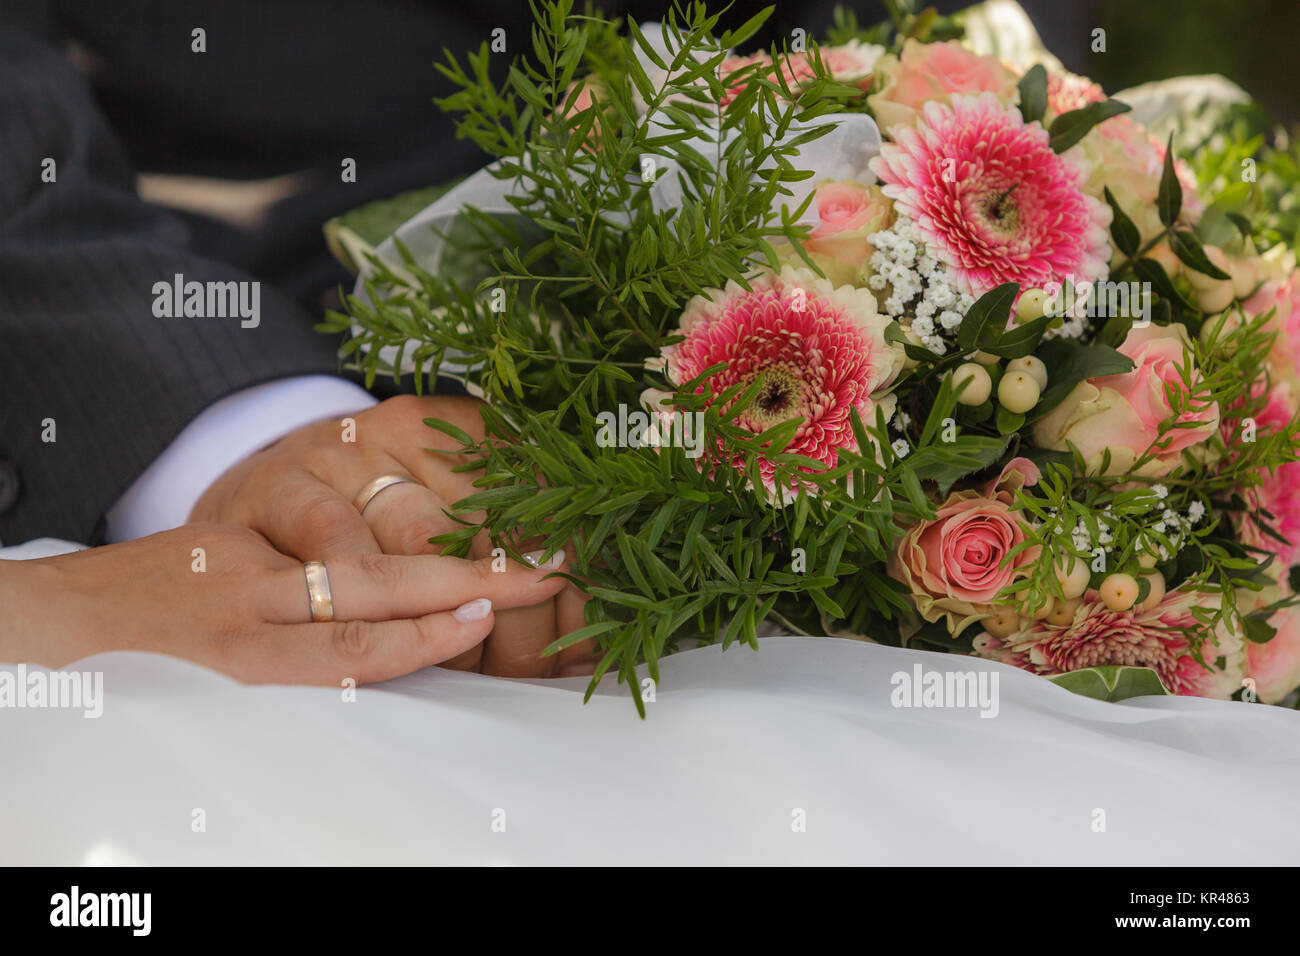 Brautstrauss heiraten Hochzeit Foto Stock